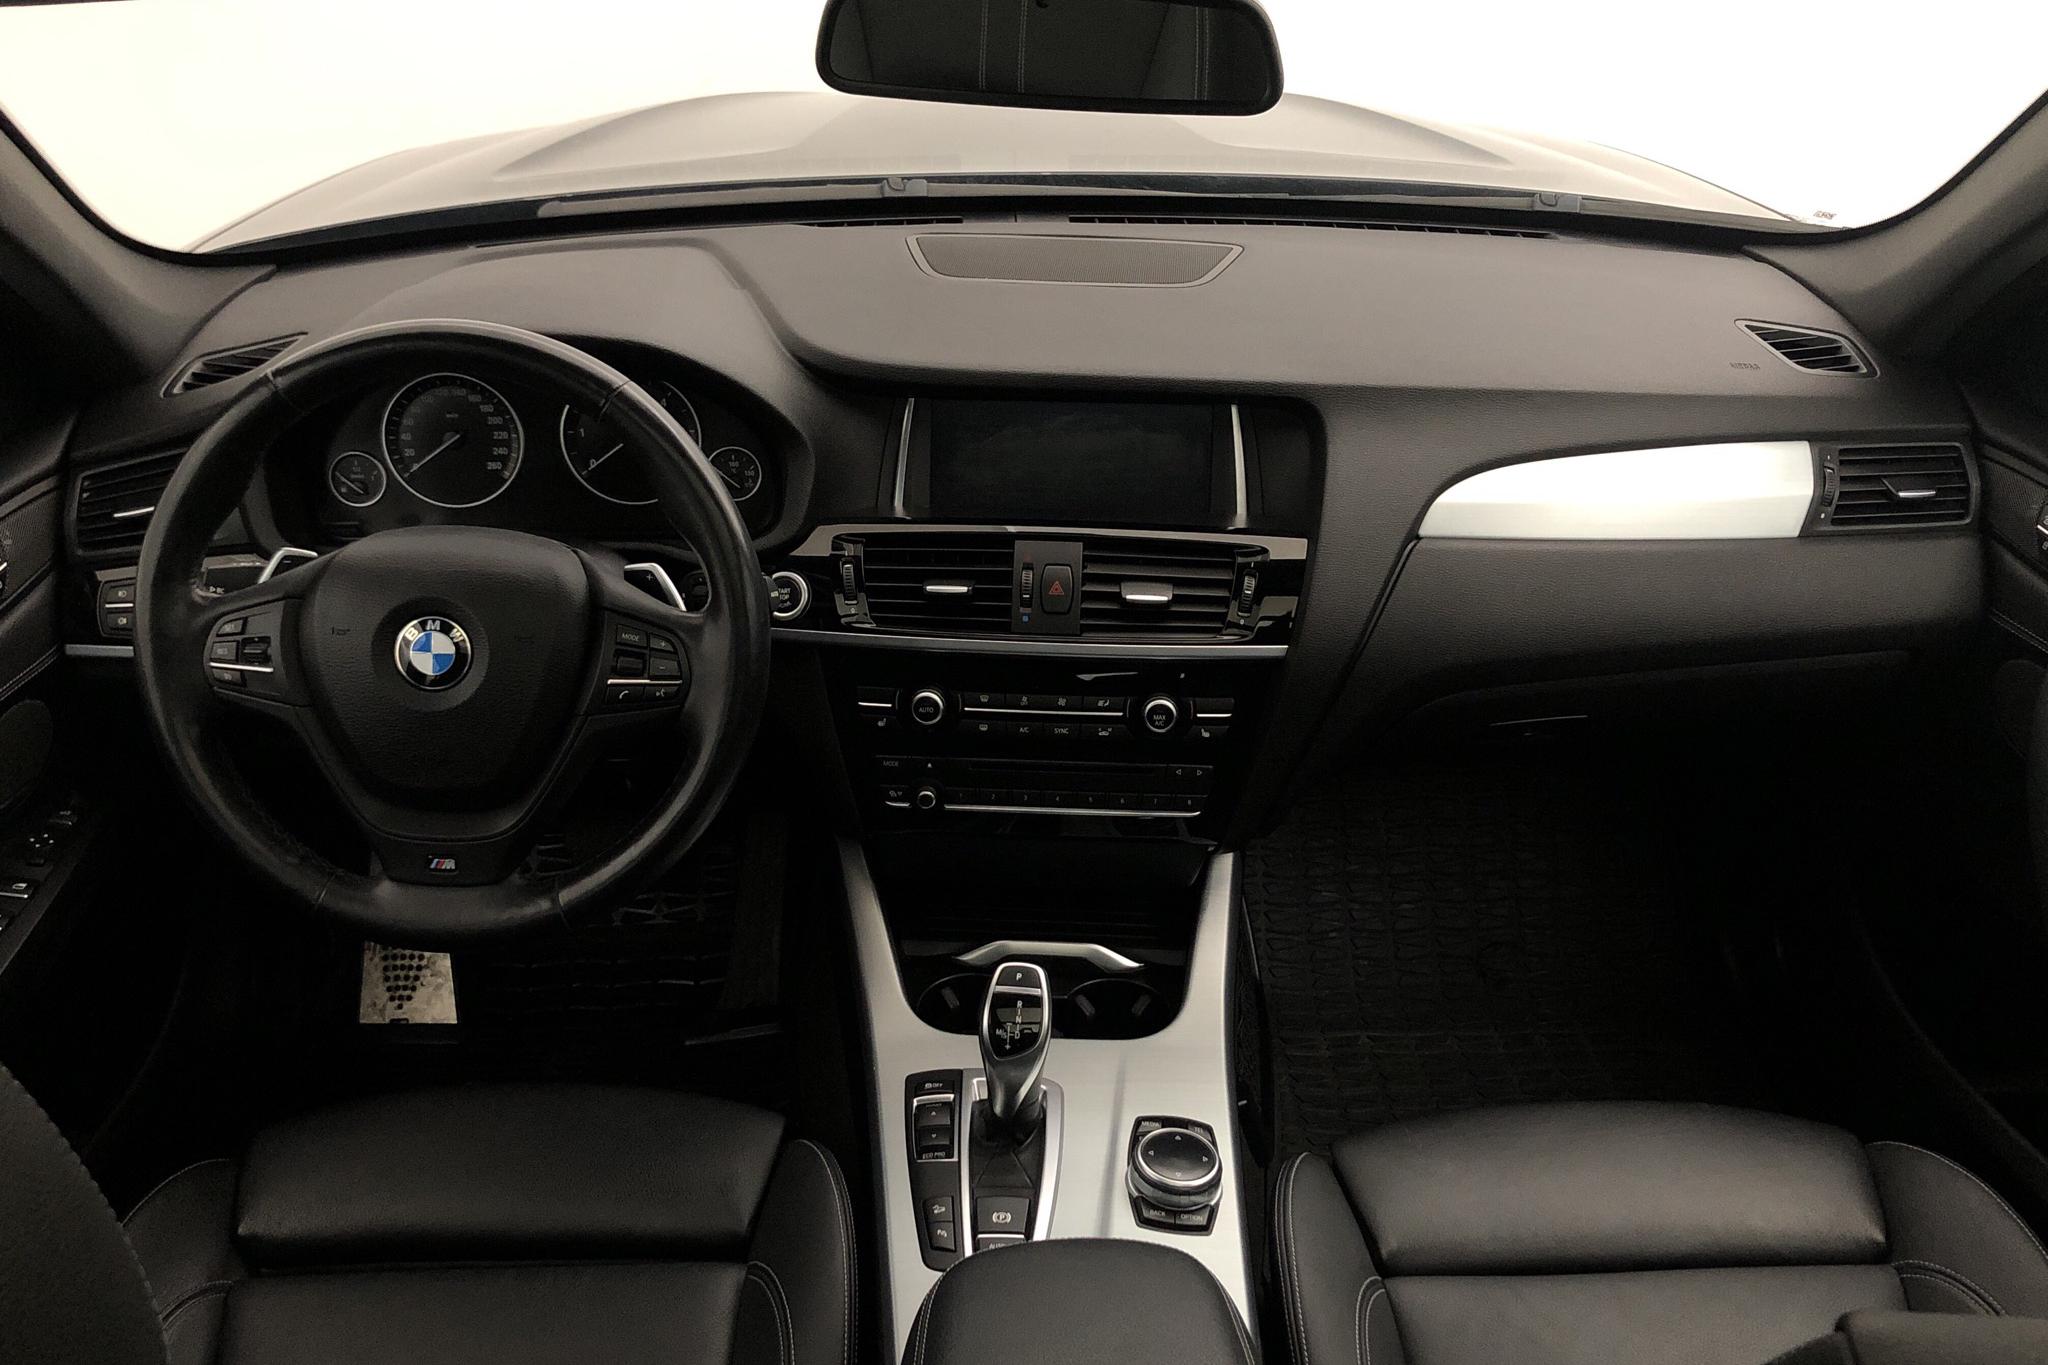 BMW X3 xDrive30d, F25 (258hk) - 145 540 km - Automatic - black - 2015